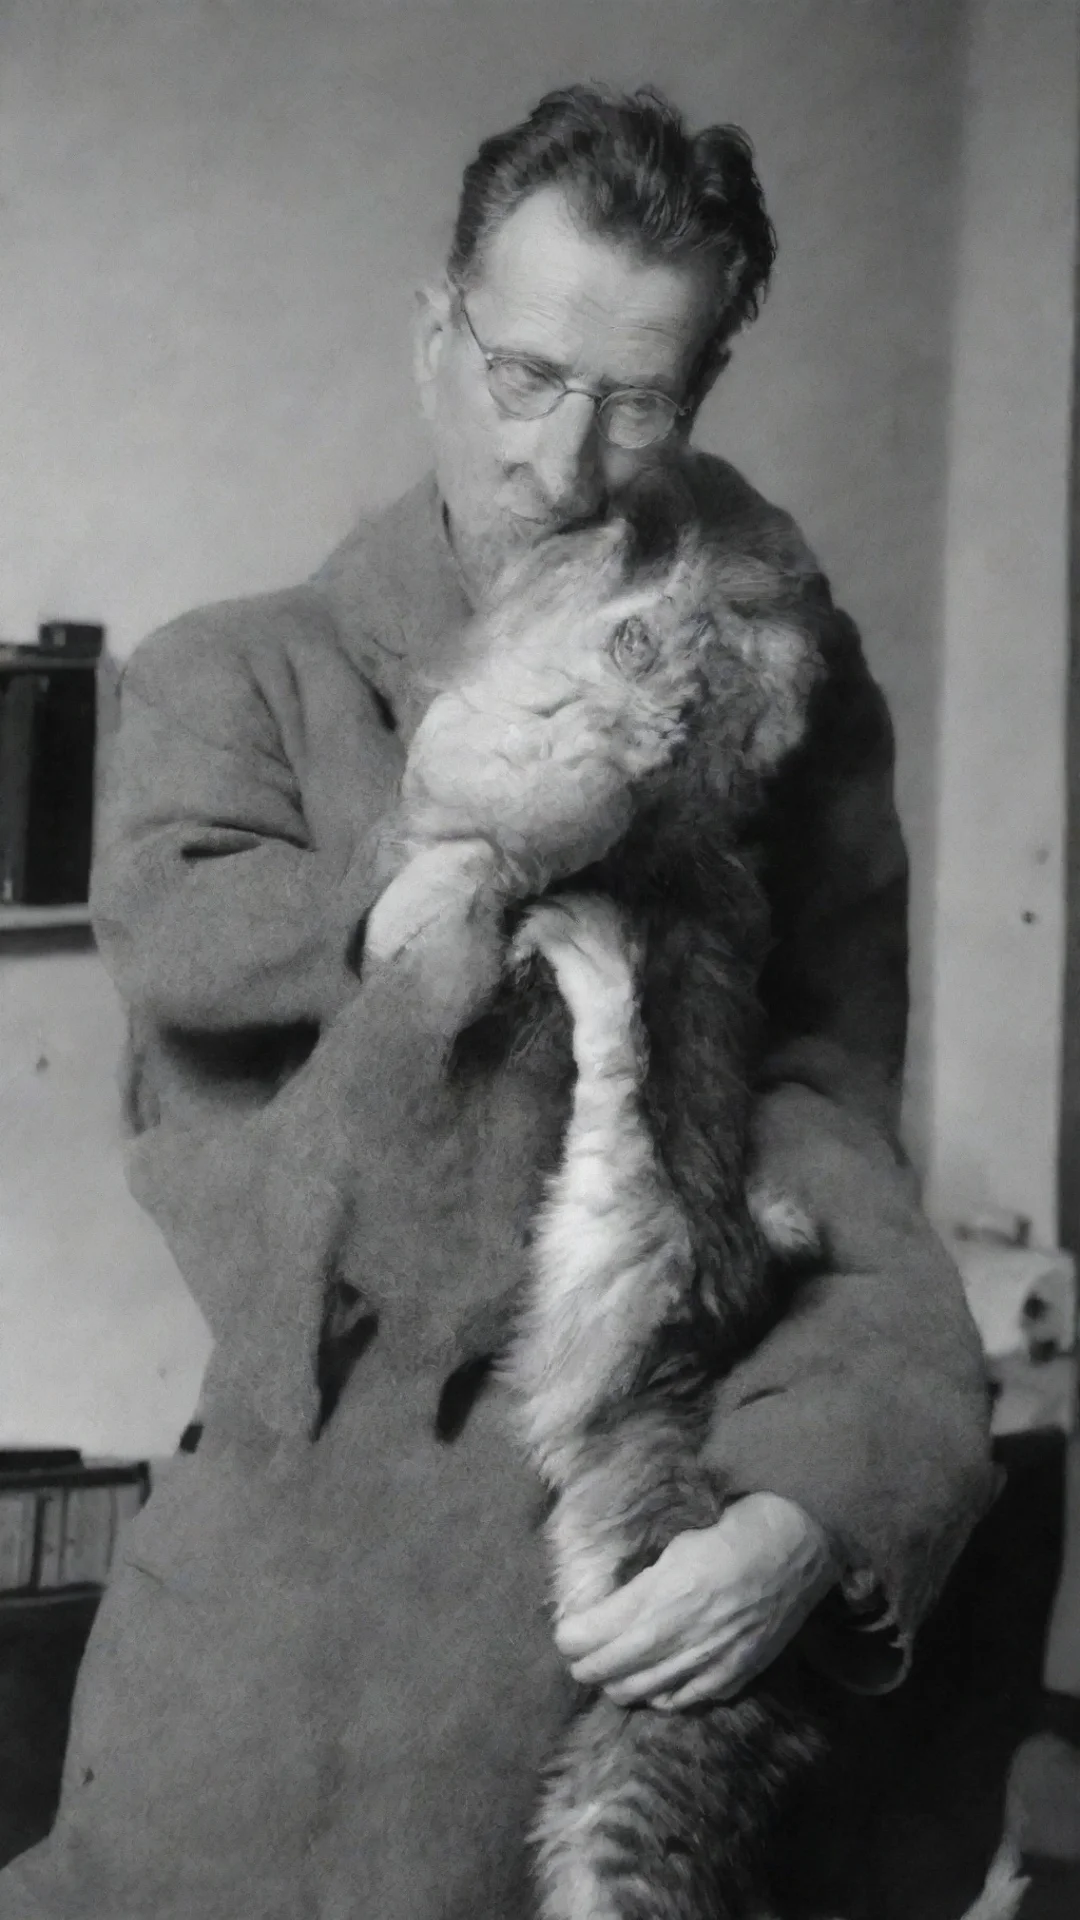 aierwin schrodinger  holding a cat tall